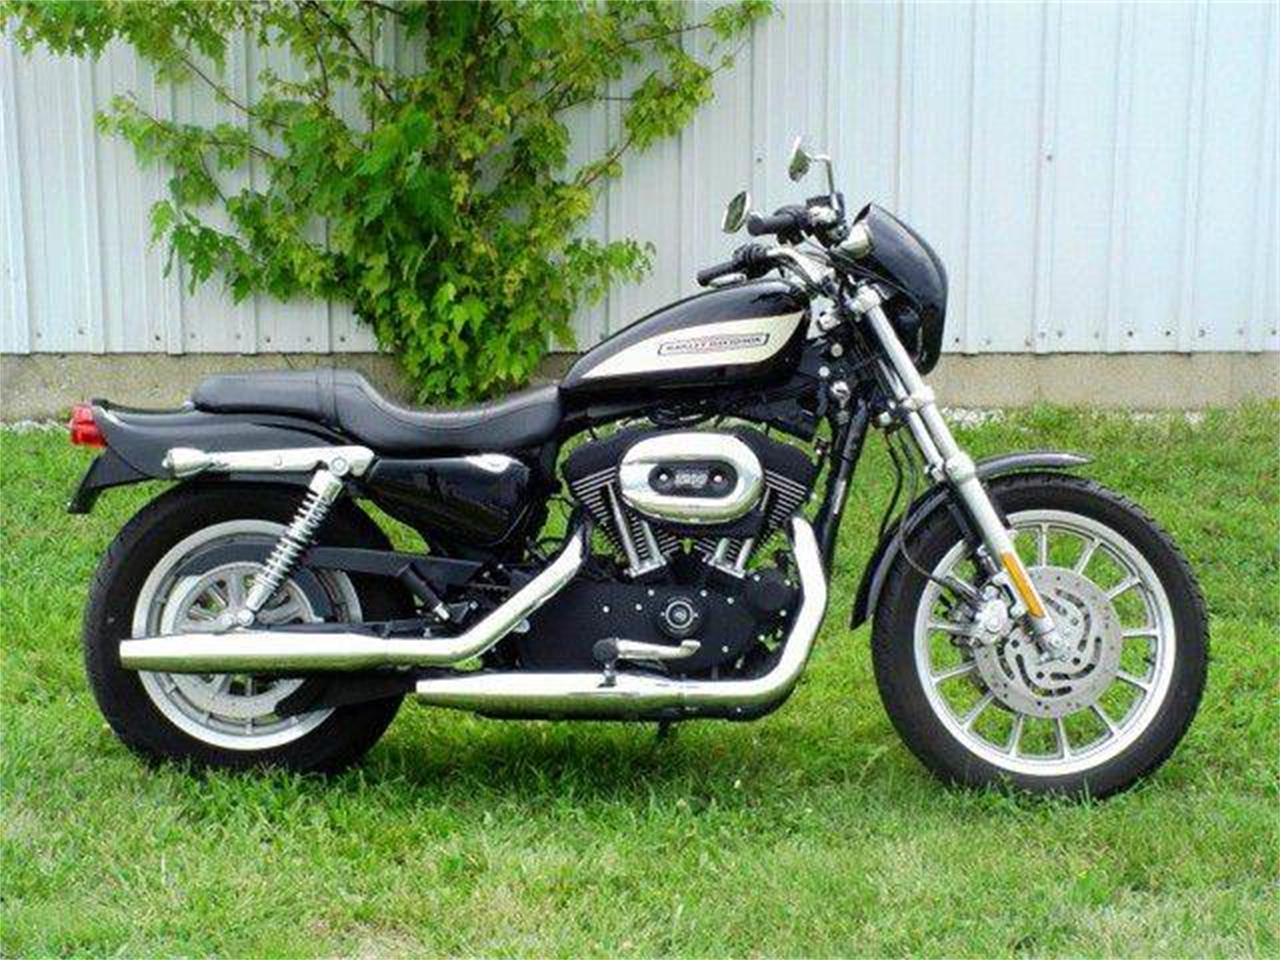 2007 Harley-Davidson Sportster for sale in Effingham, IL